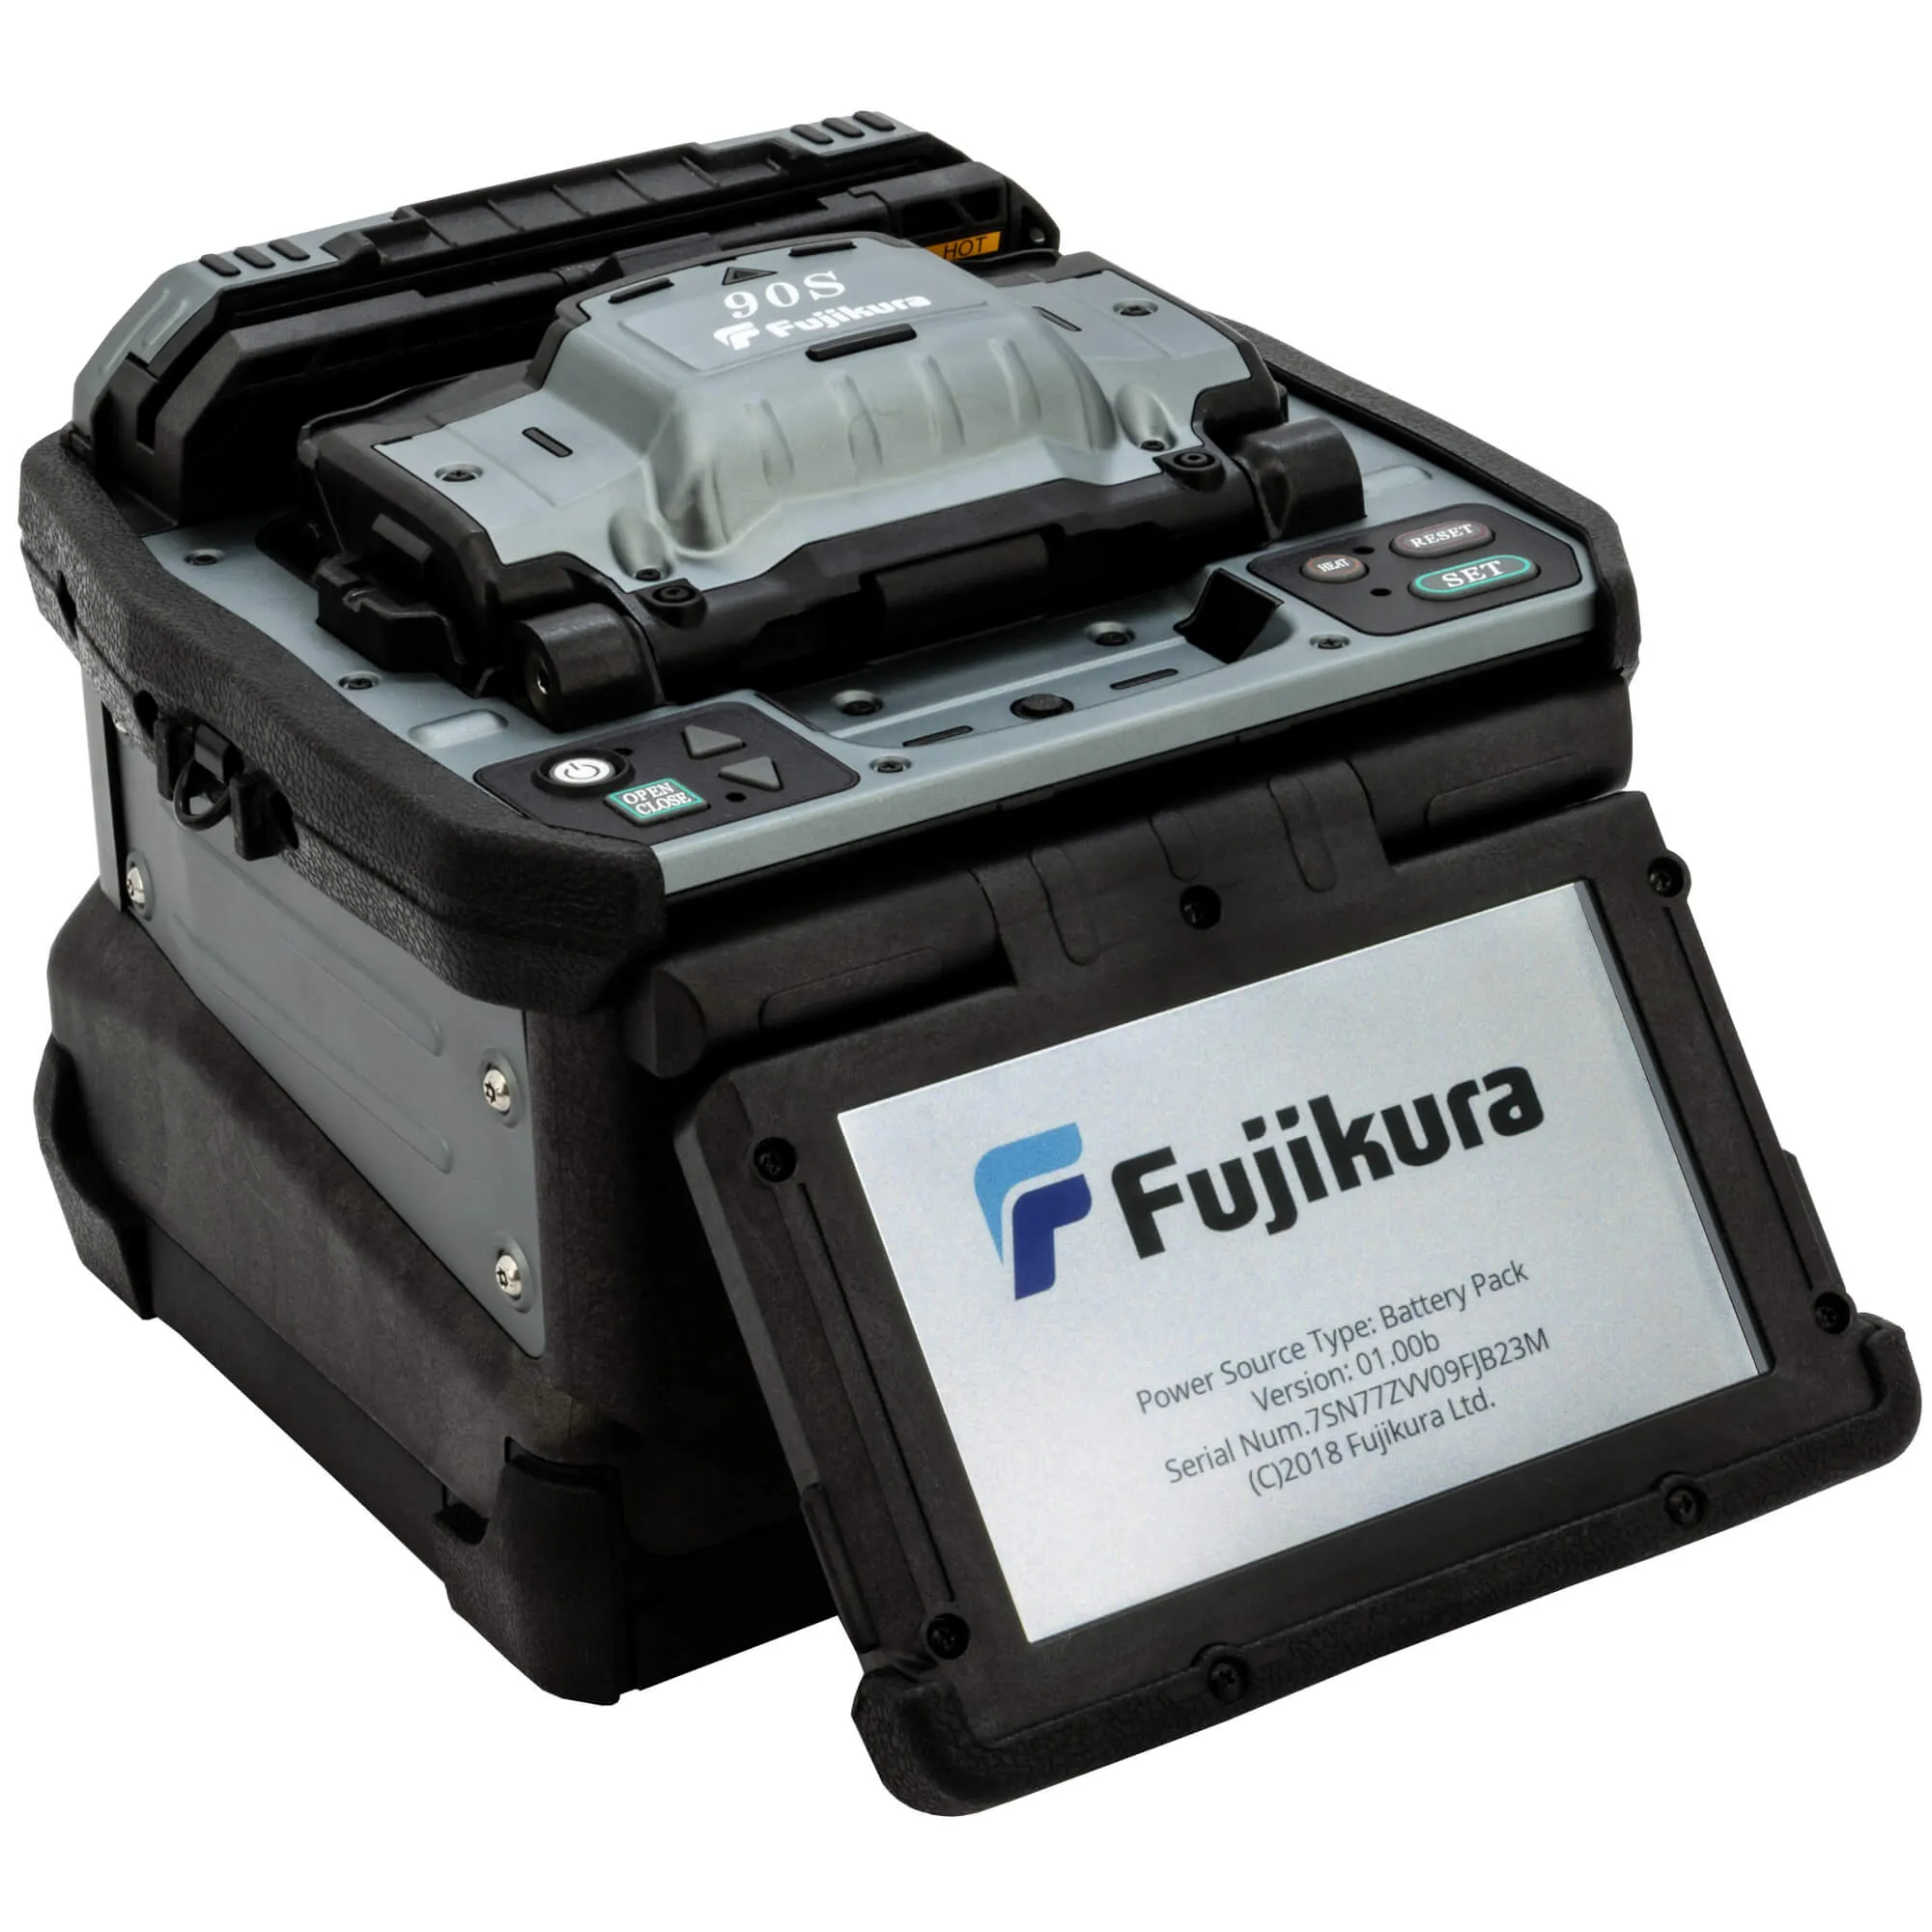 Fujikura Core Alignment Fusion Splicer 90S+ Kit